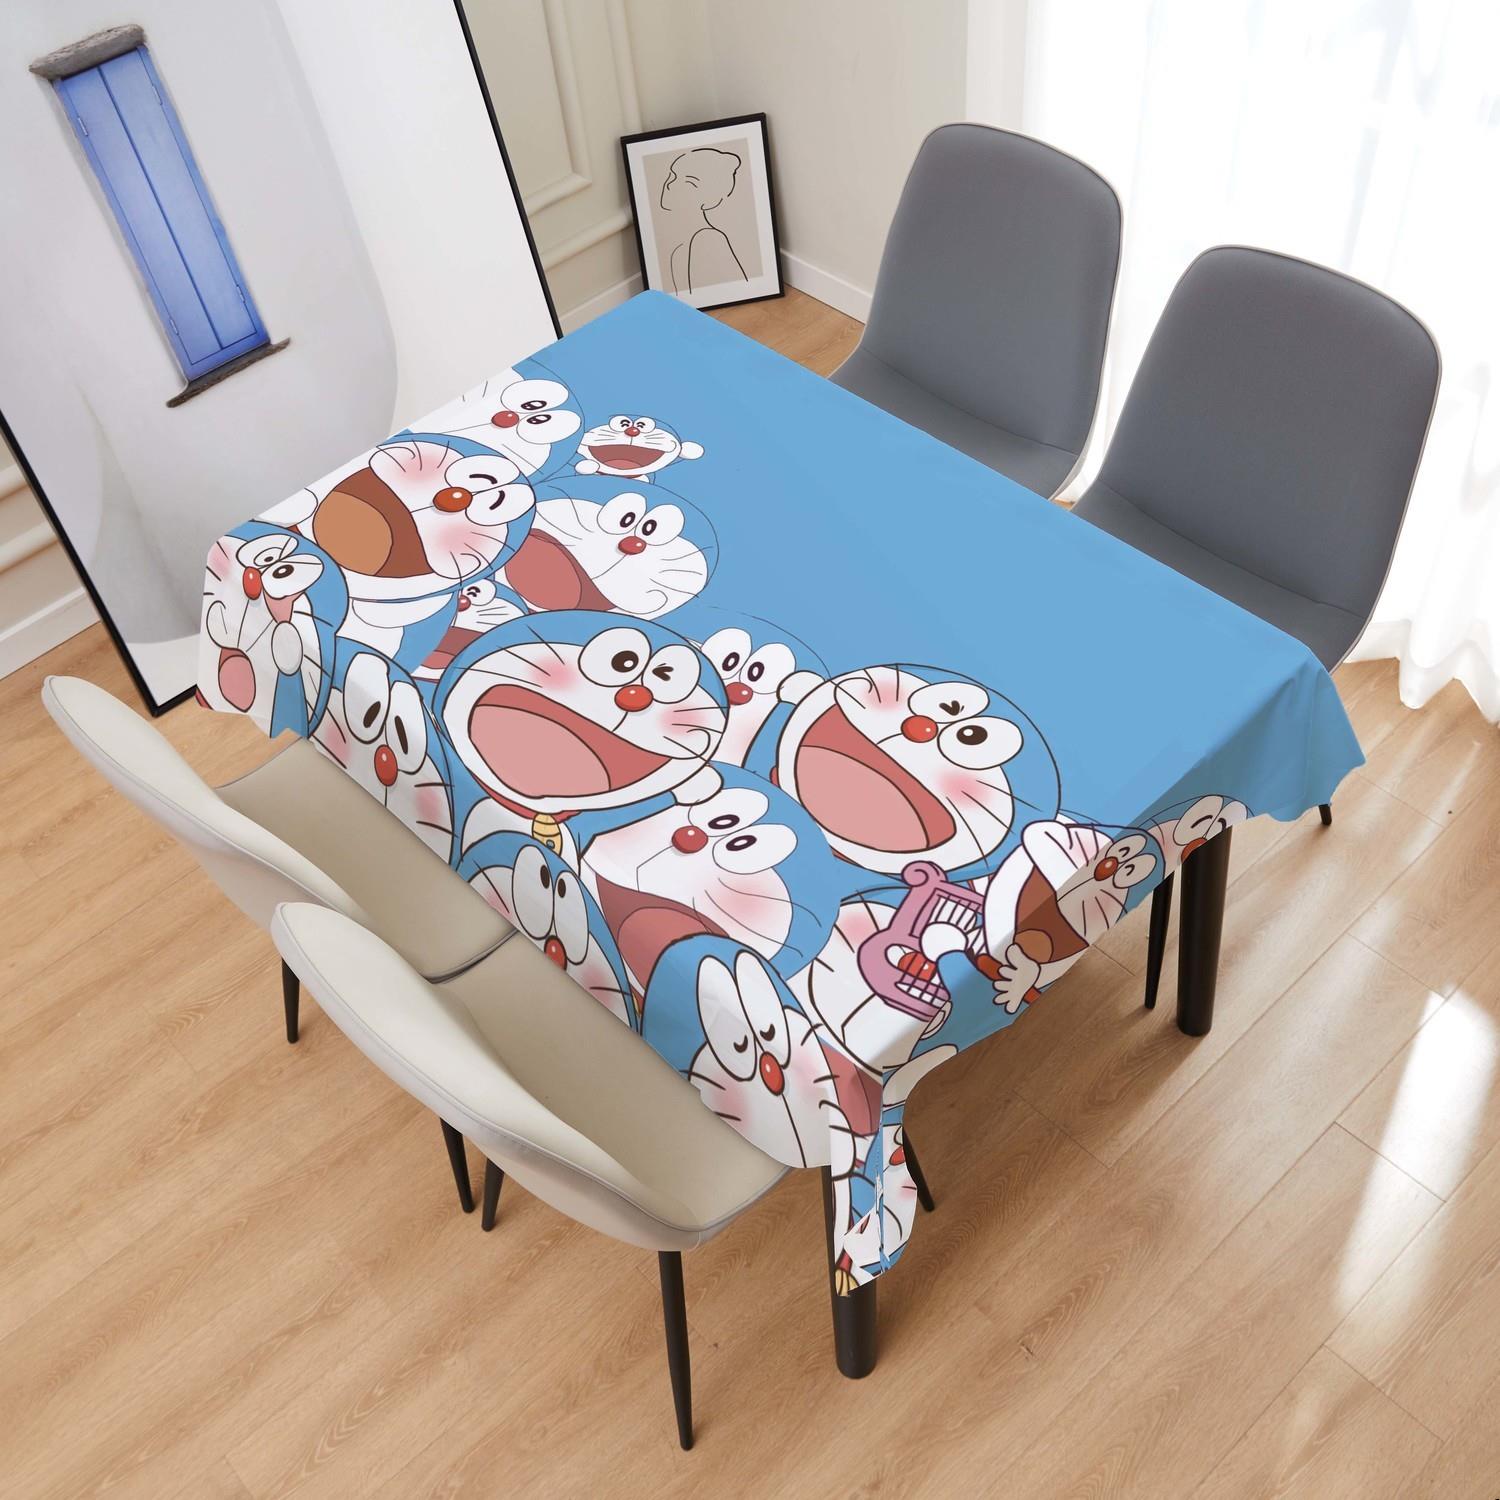 日式卡通动漫哆啦A梦桌布儿童学生少女书桌布加厚超柔绒布长方形 - 图3